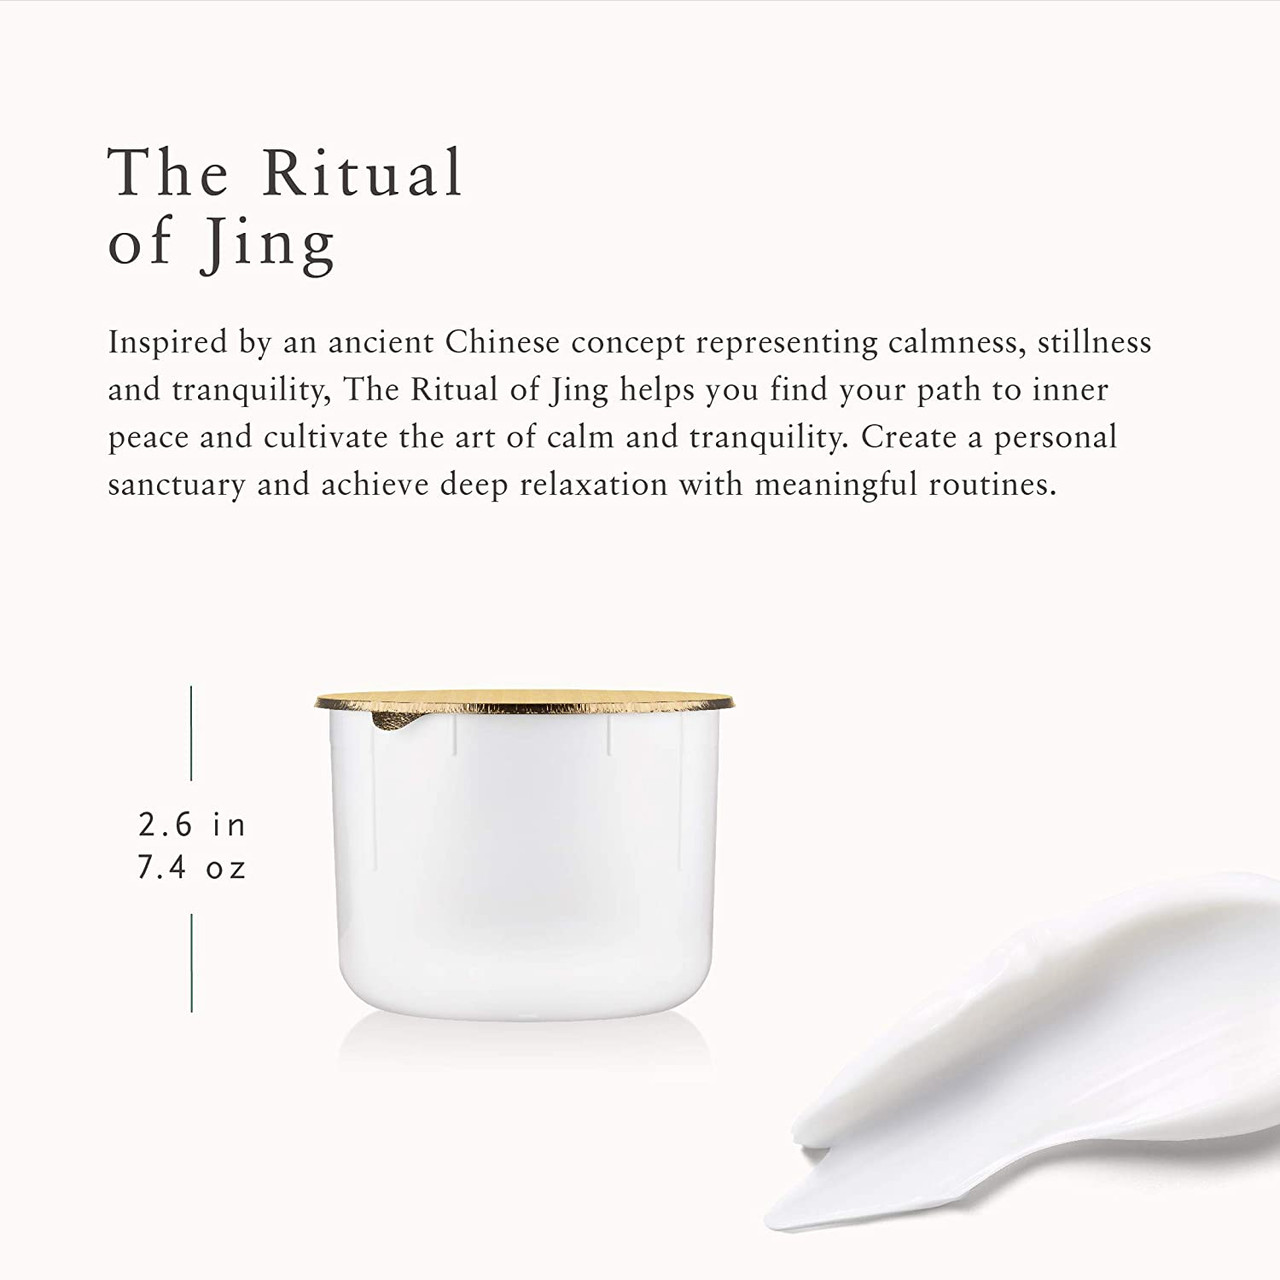 The Ritual of Jing Refill Body Cream - refill body cream